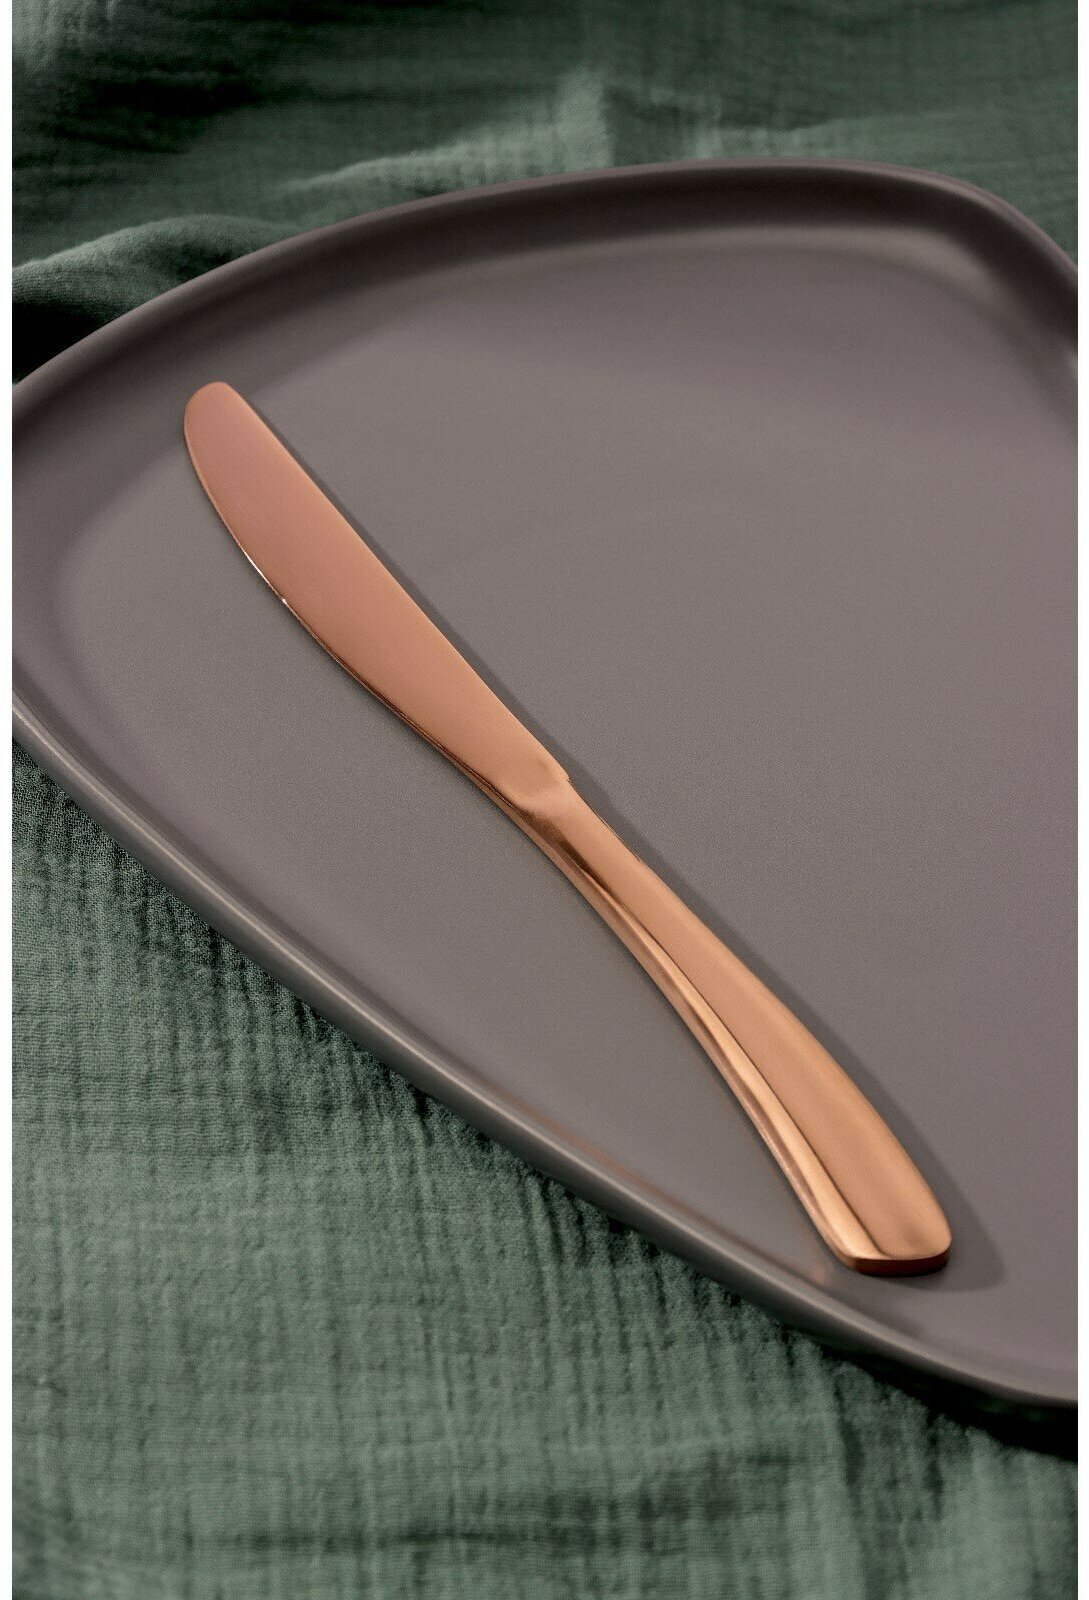 Нож столовый из нержавеющей стали Magistro «Эми», длина 22,5 см, на подвесе, цвет бронзовый